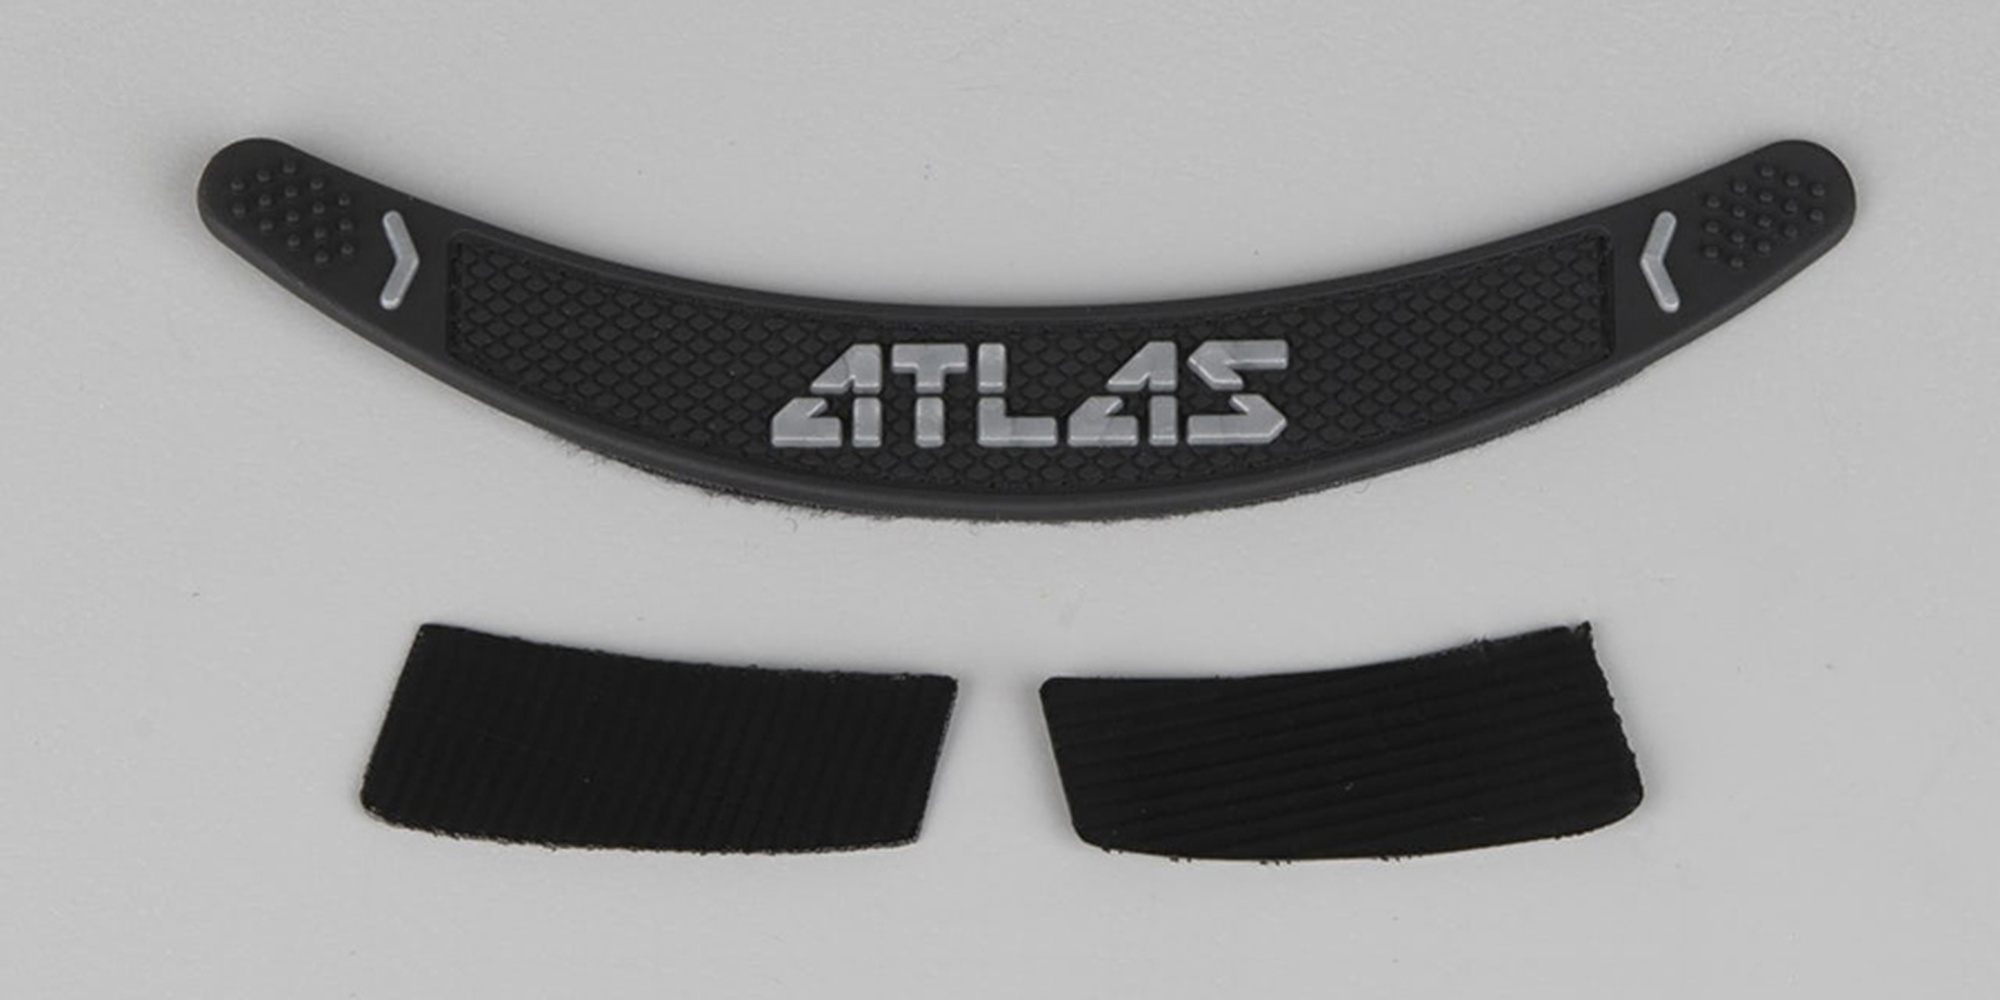 nahradní suchý zip ATLAS (Broll) - zvìtšit obrázek